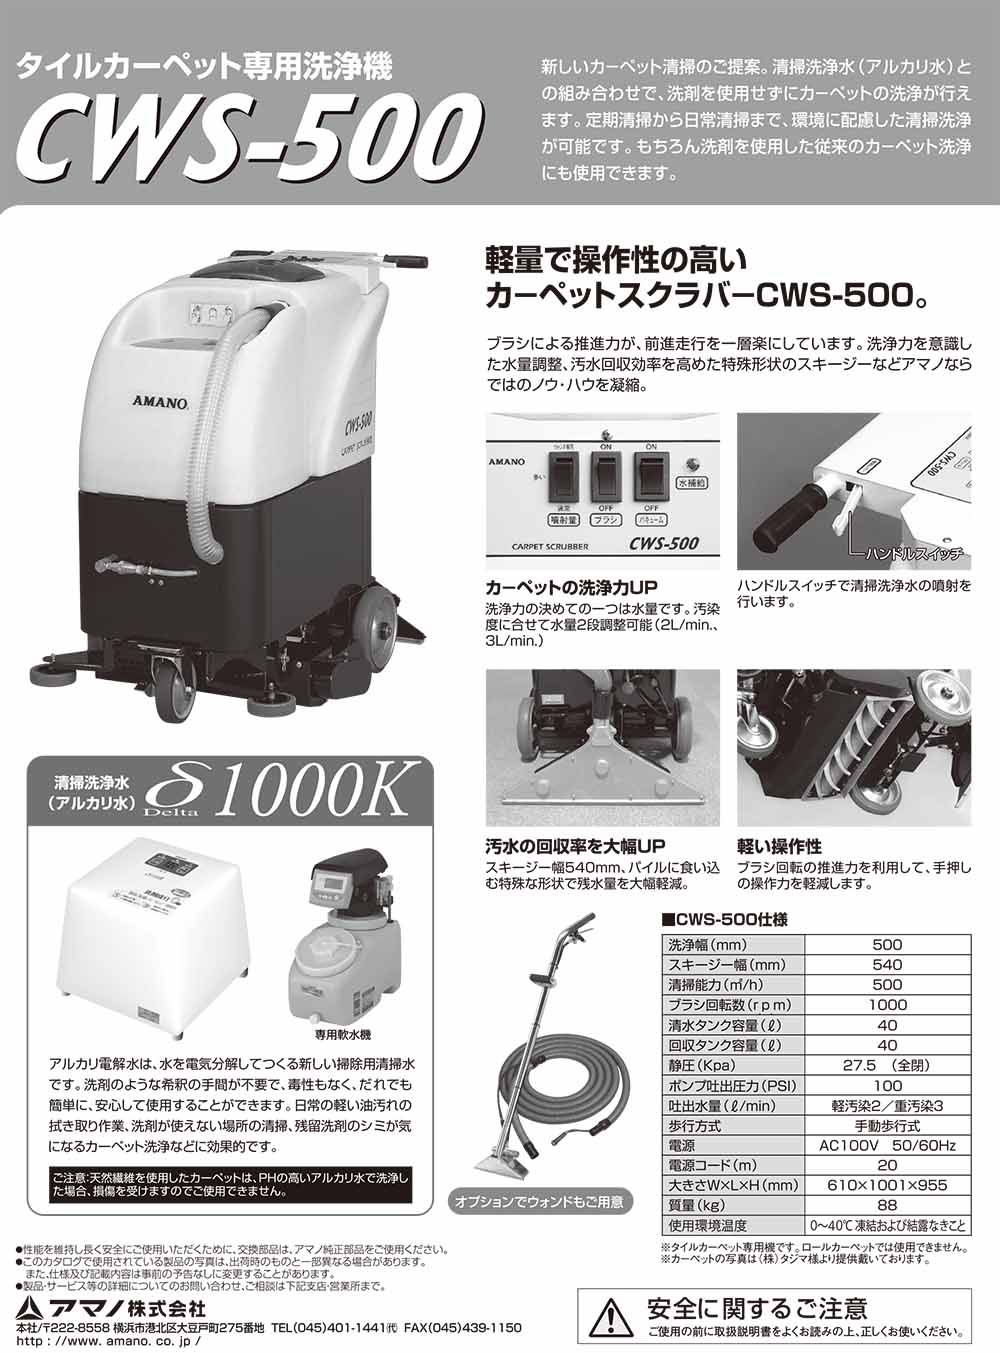 リース契約可能】アマノ CWS-500 タイルカーペット専用洗浄機